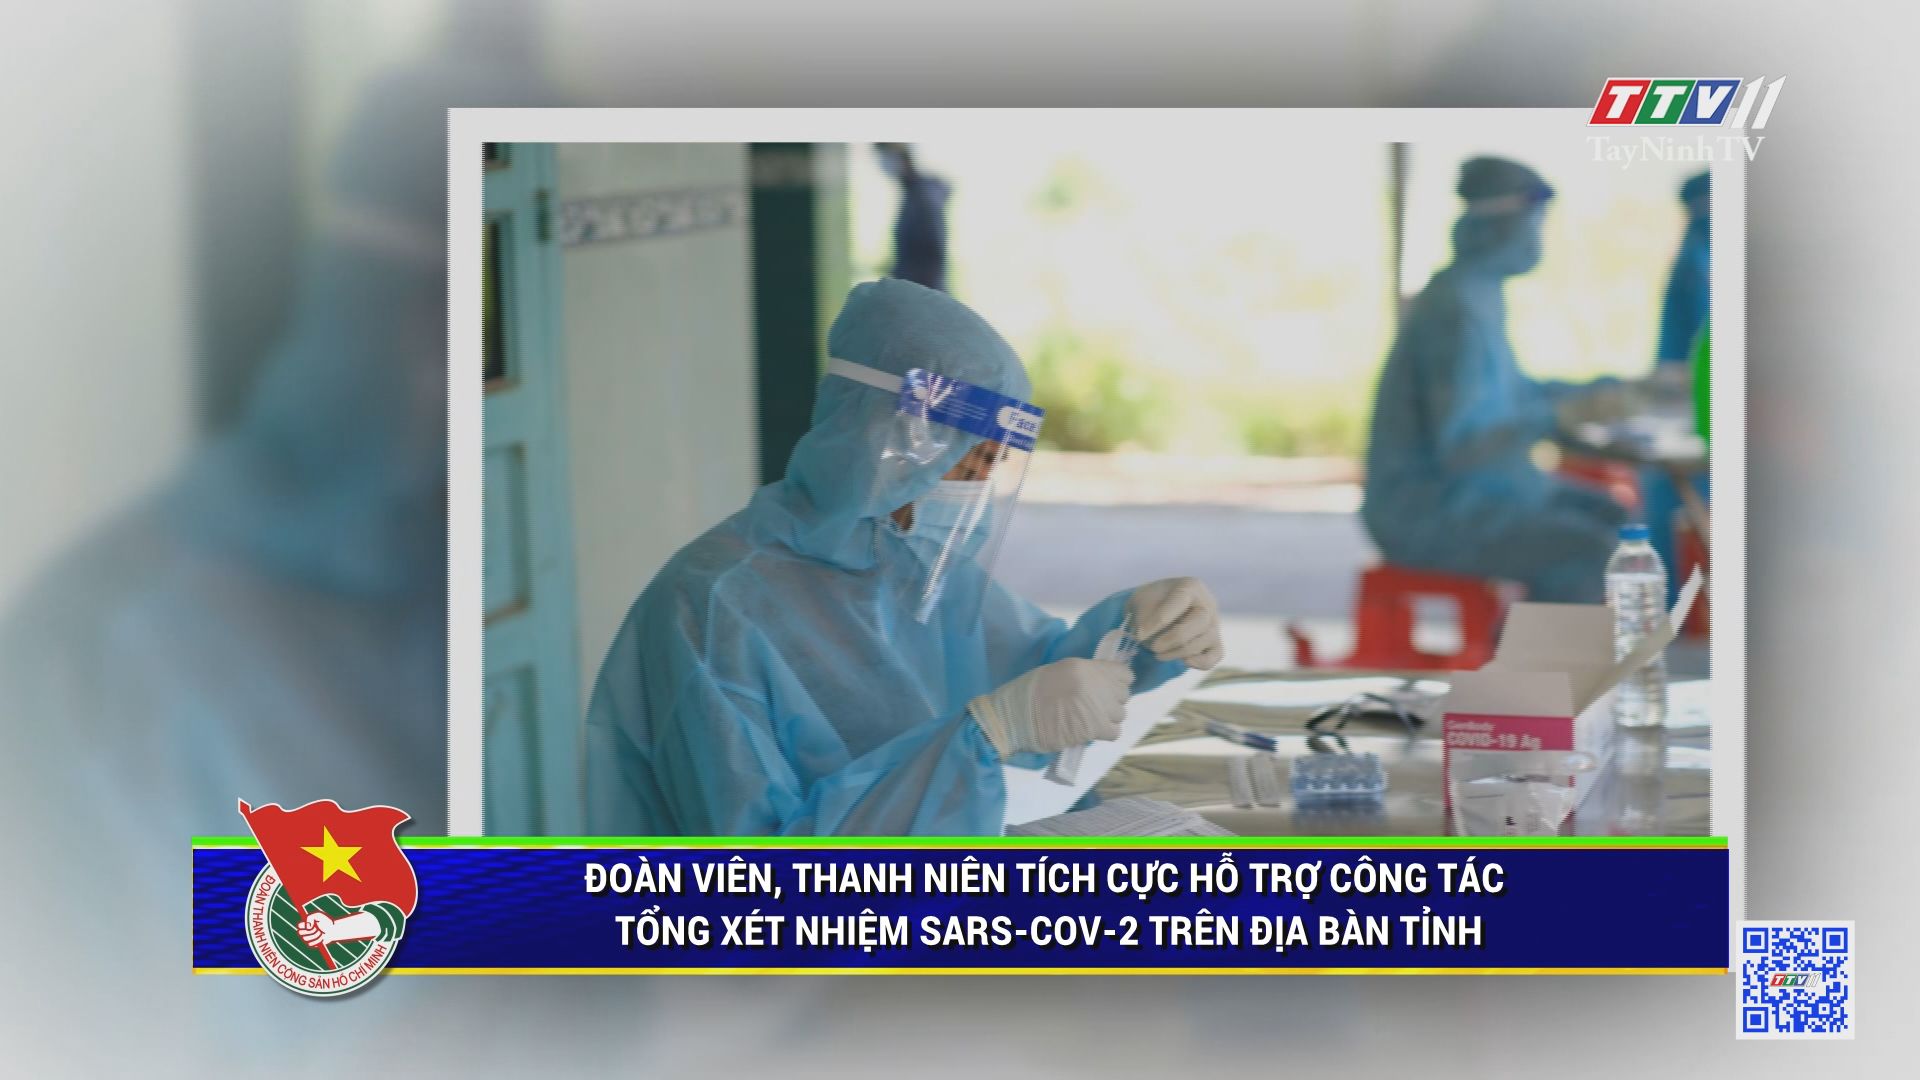 Đoàn viên, thanh niên tích cực hỗ trợ công tác tổng xét nghiệm SARS-CoV-2 trên địa bàn tỉnh | THANH NIÊN | TayNinhTV